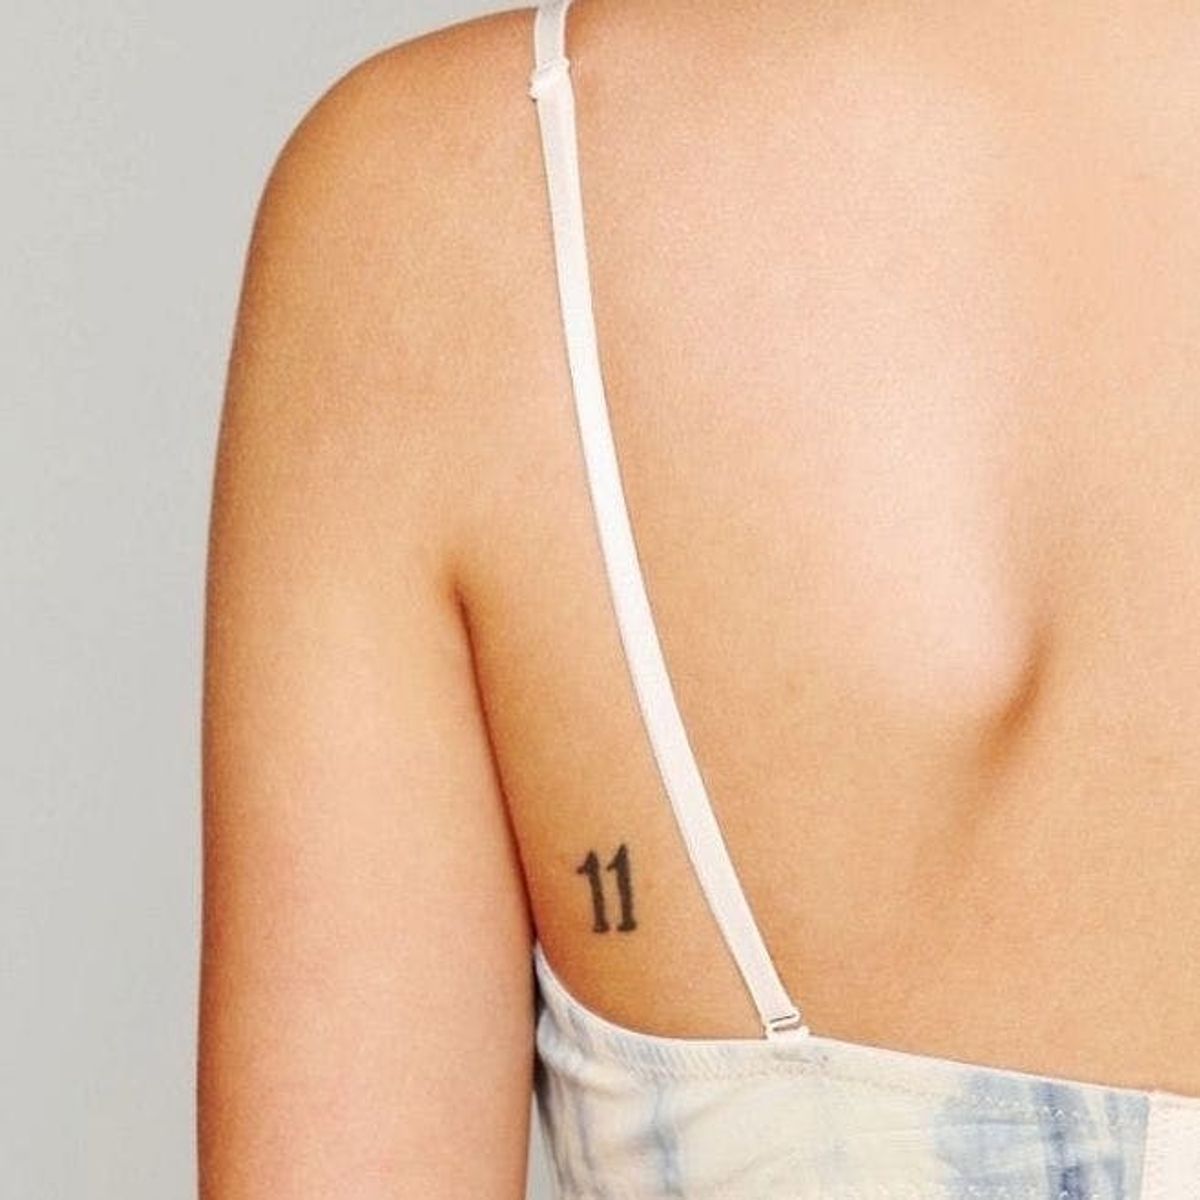 9 Tiny Tattoo Ideas That’ll Stay Hidden